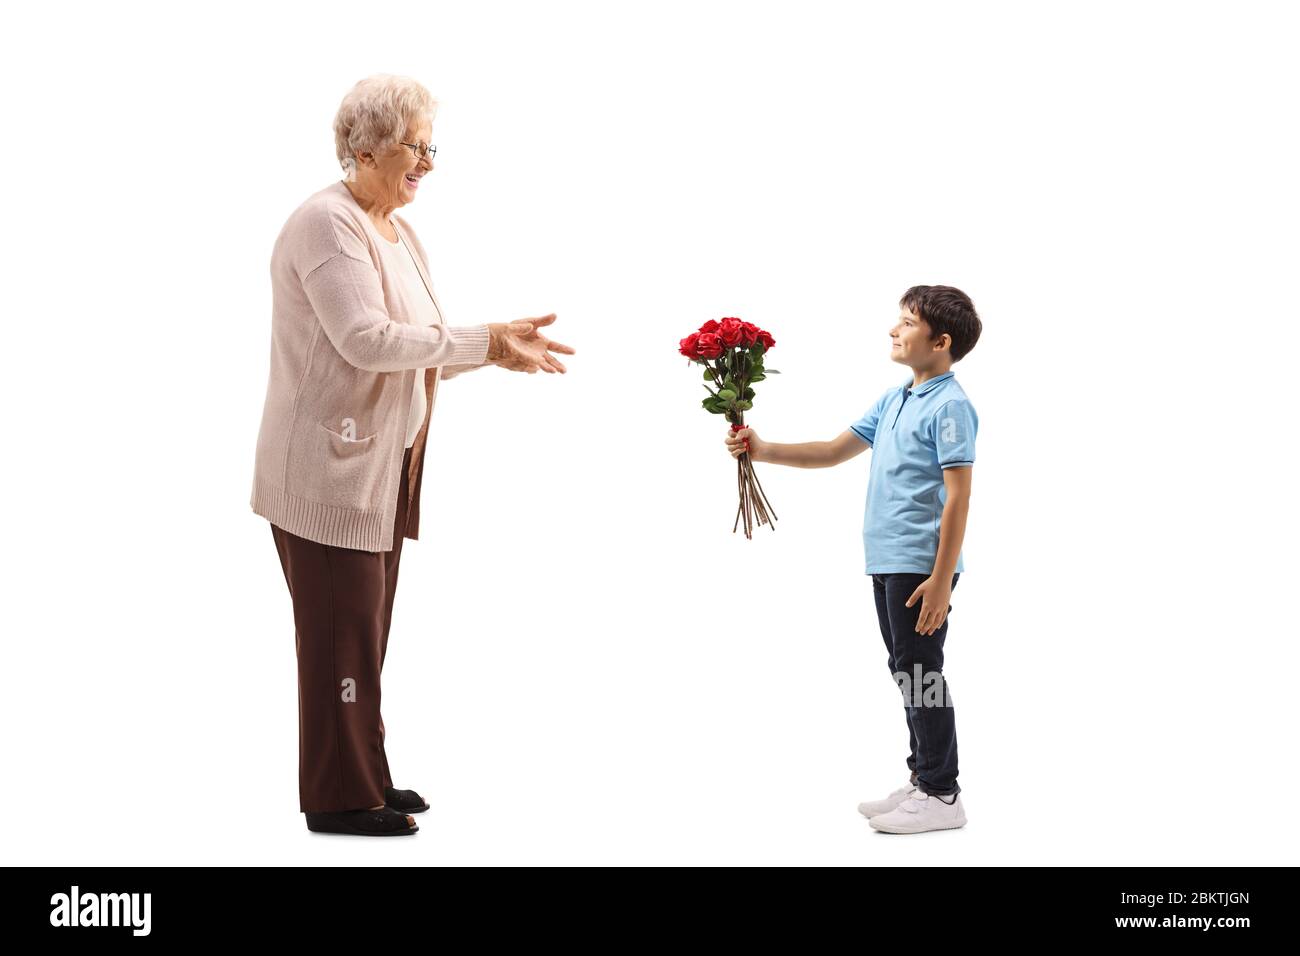 Scatto a tutta lunghezza di un ragazzo che dà un mazzo di rose rosse ad una donna anziana isolata su sfondo bianco Foto Stock